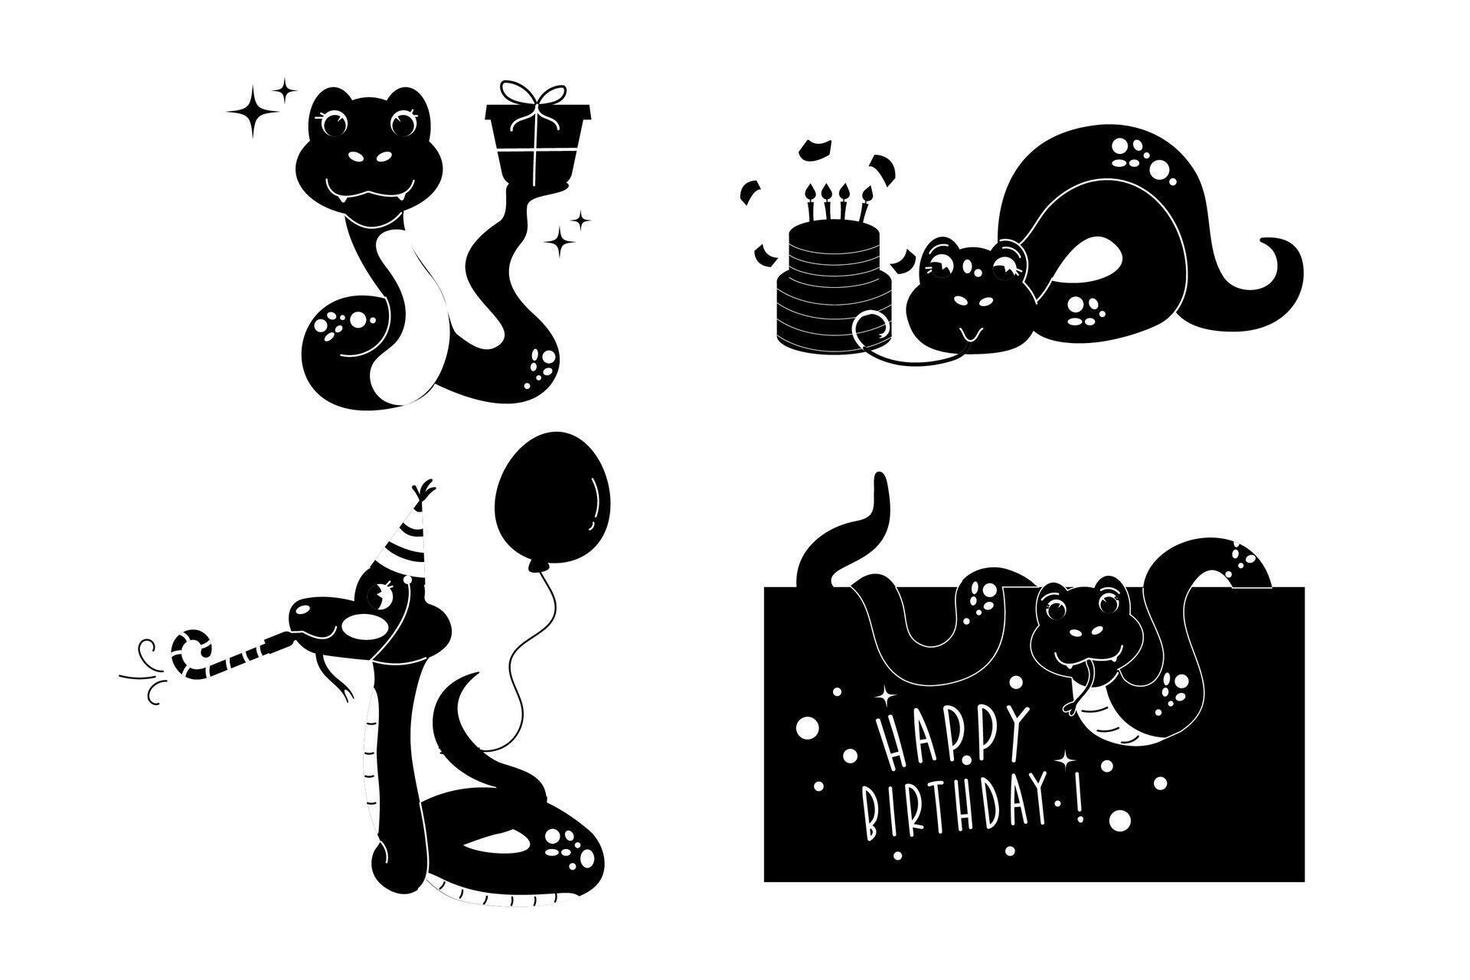 impostato cartone animato silhouette personaggio compleanno serpente mano disegnato vettore